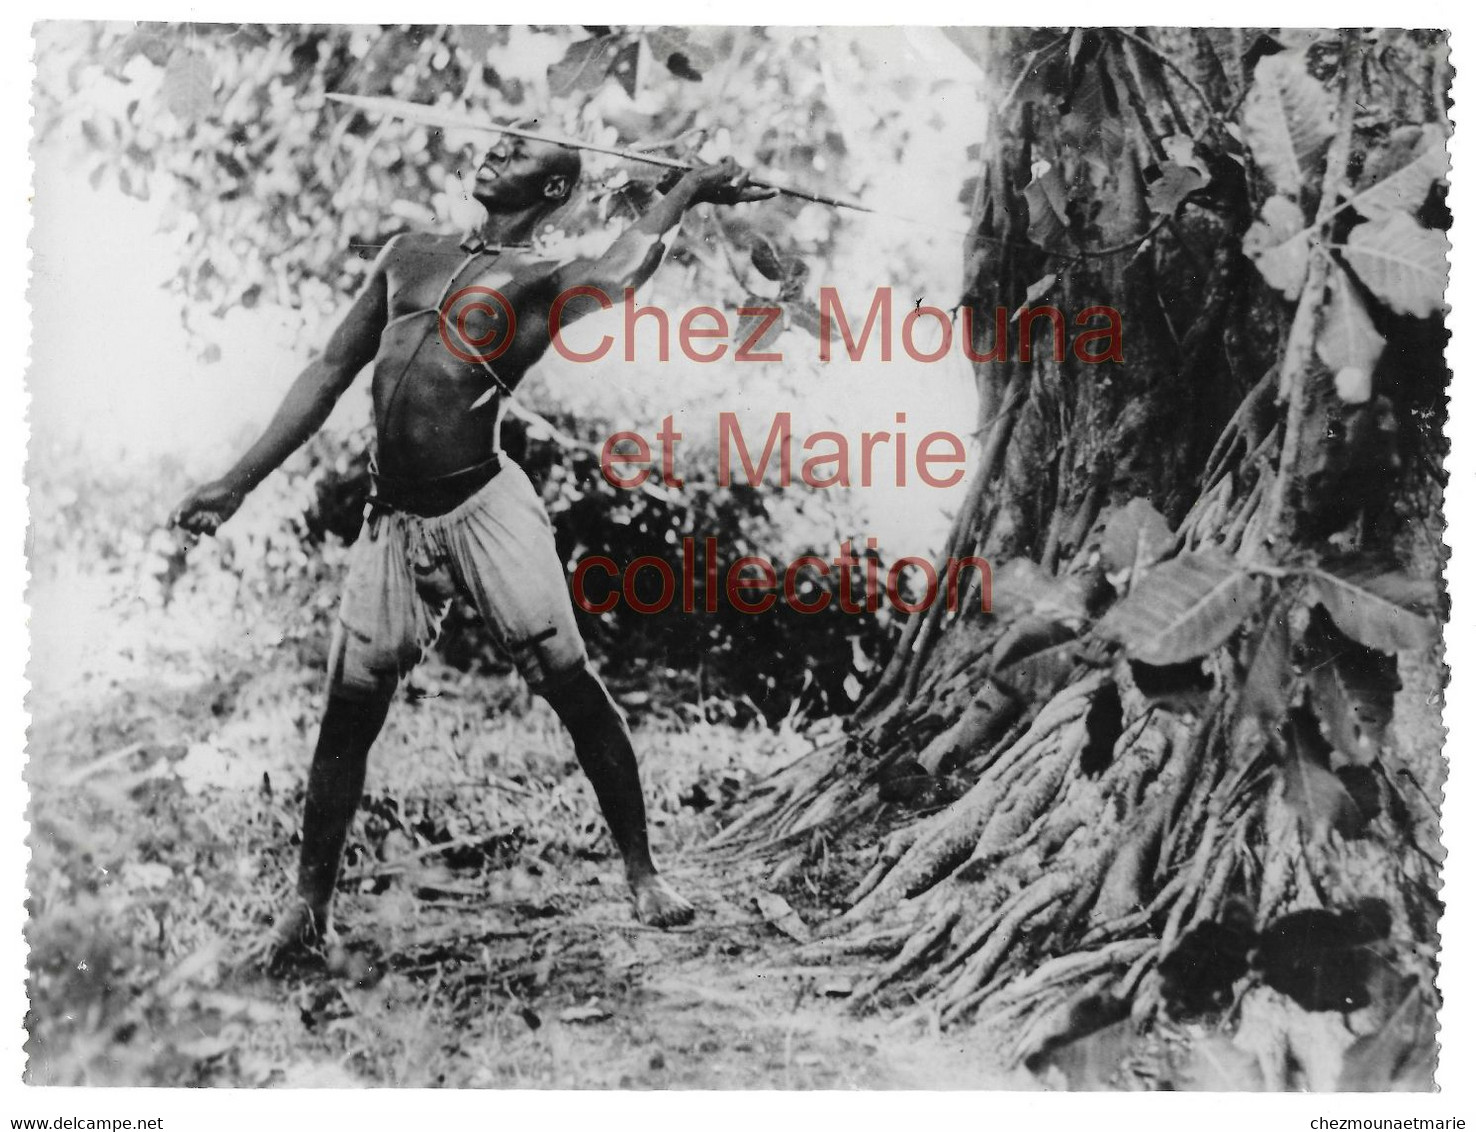 COTE D IVOIRE - INDIGENE ETHNIE HOMME NU CHASSEUR - PHOTO 24*18 CM AFRIQUE - Africa